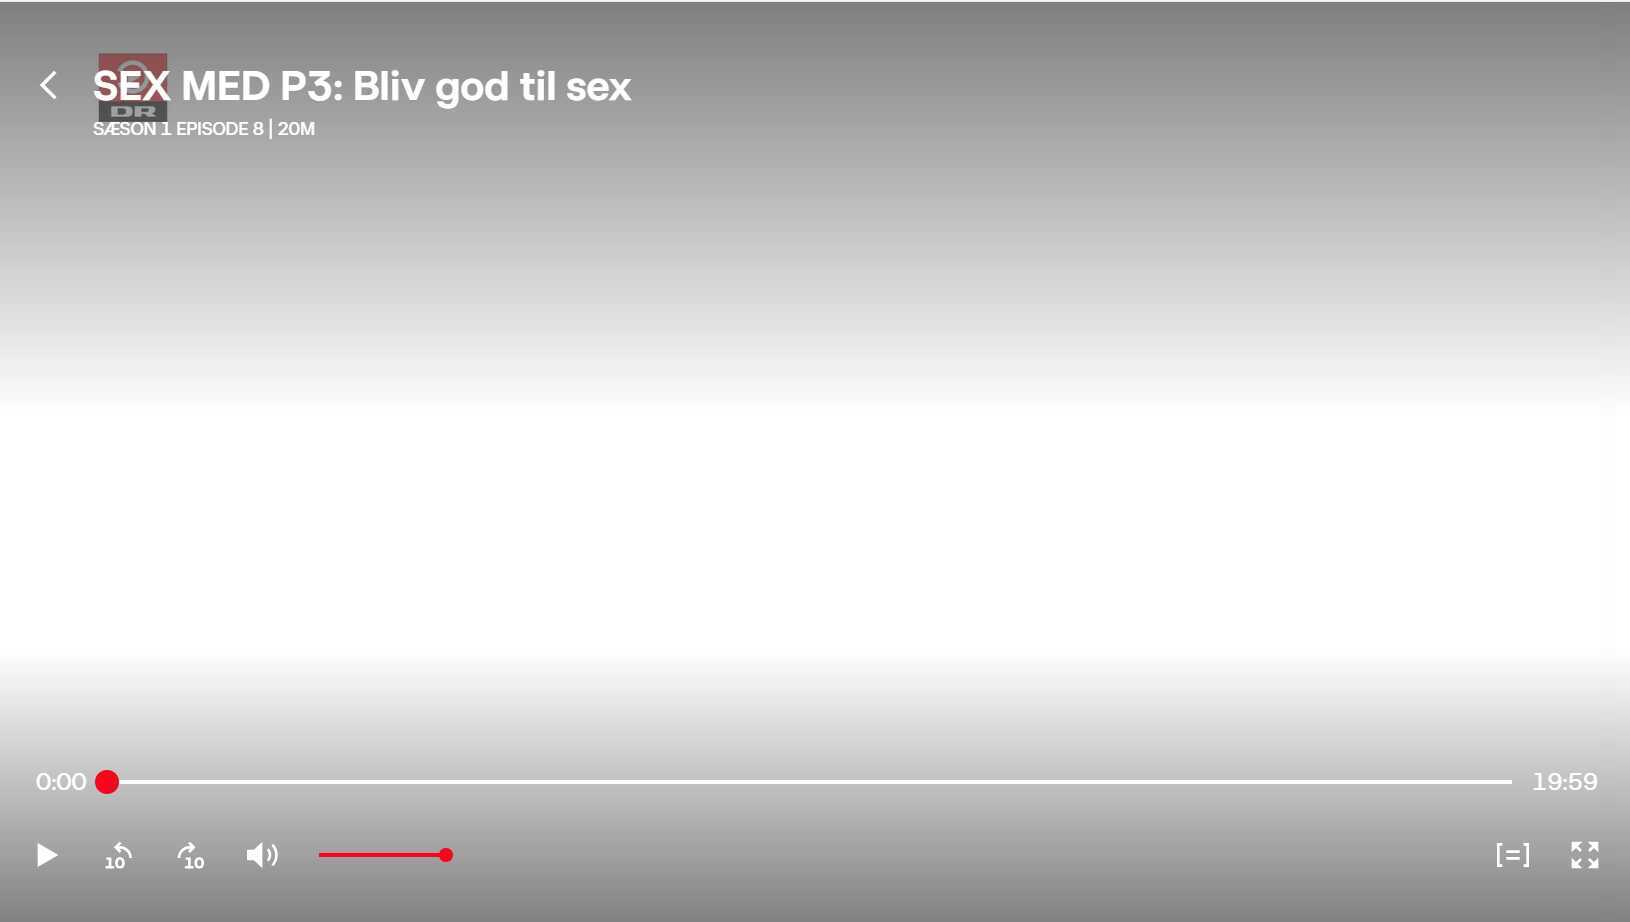 Sex Med P3 S1 E8 Bliv God Til Sex